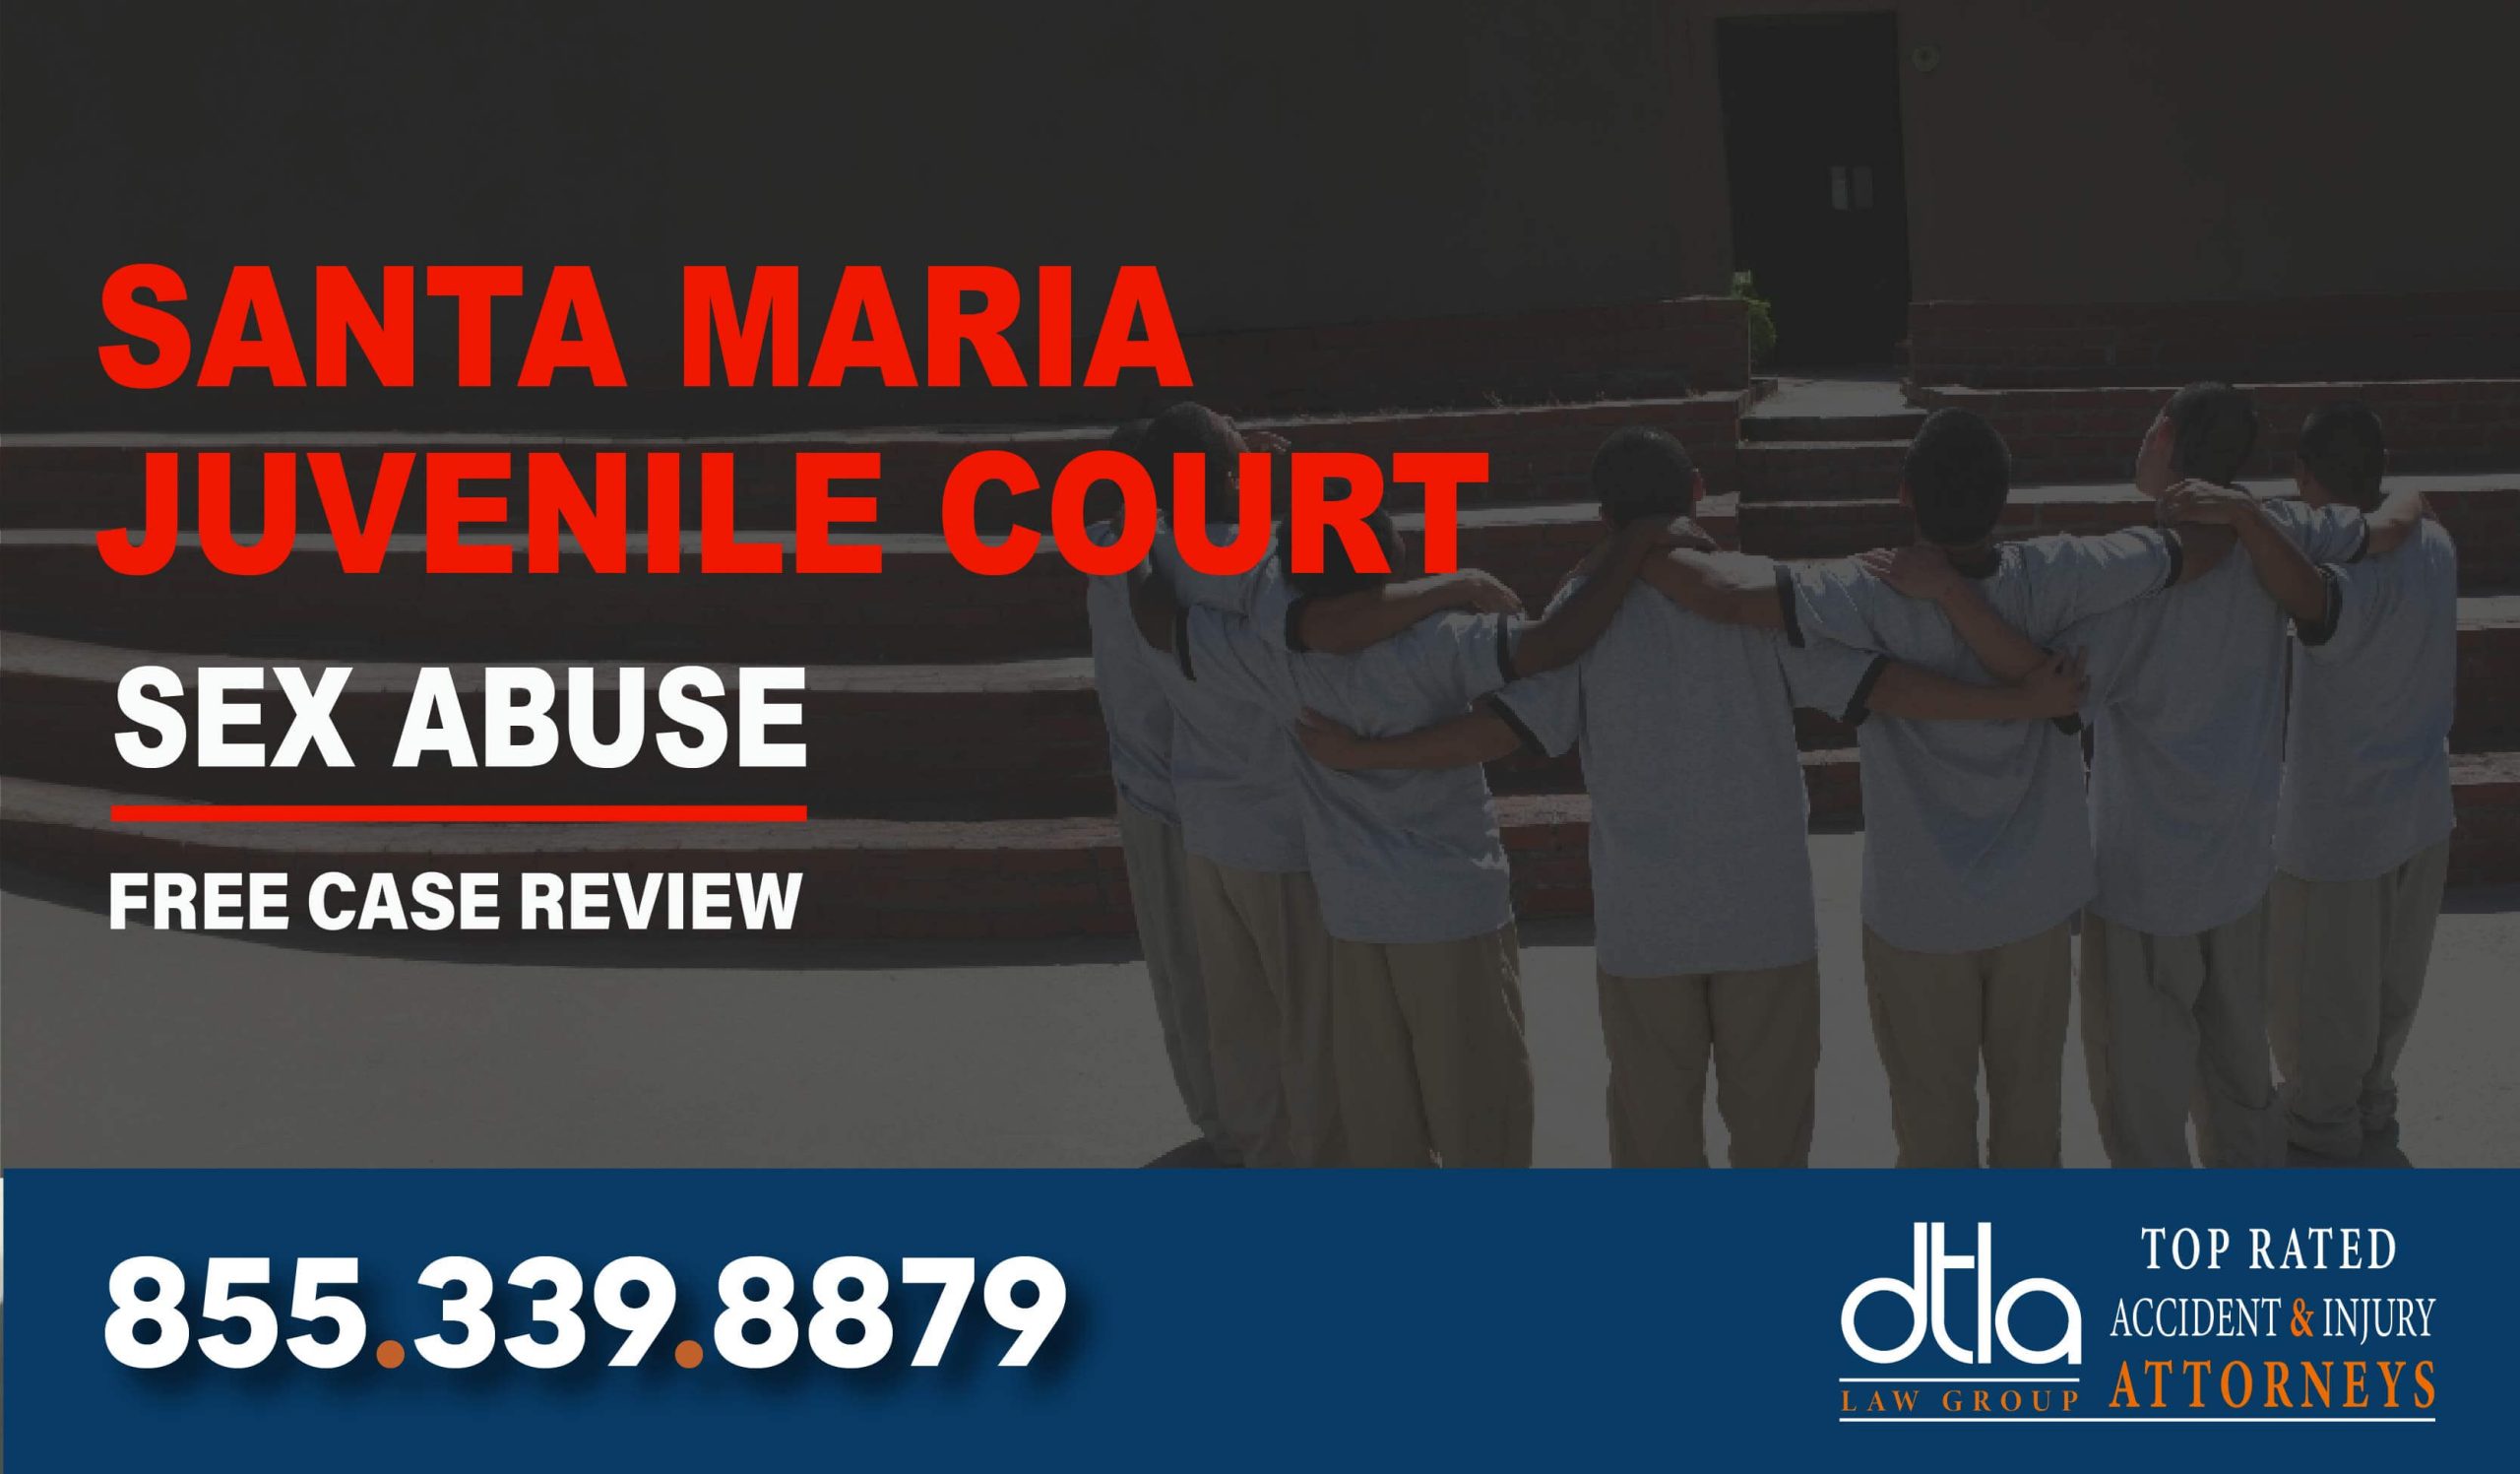 Santa Maria Juvenile Court Lawsuit Lawyer compensation lawyer attorney sue liability